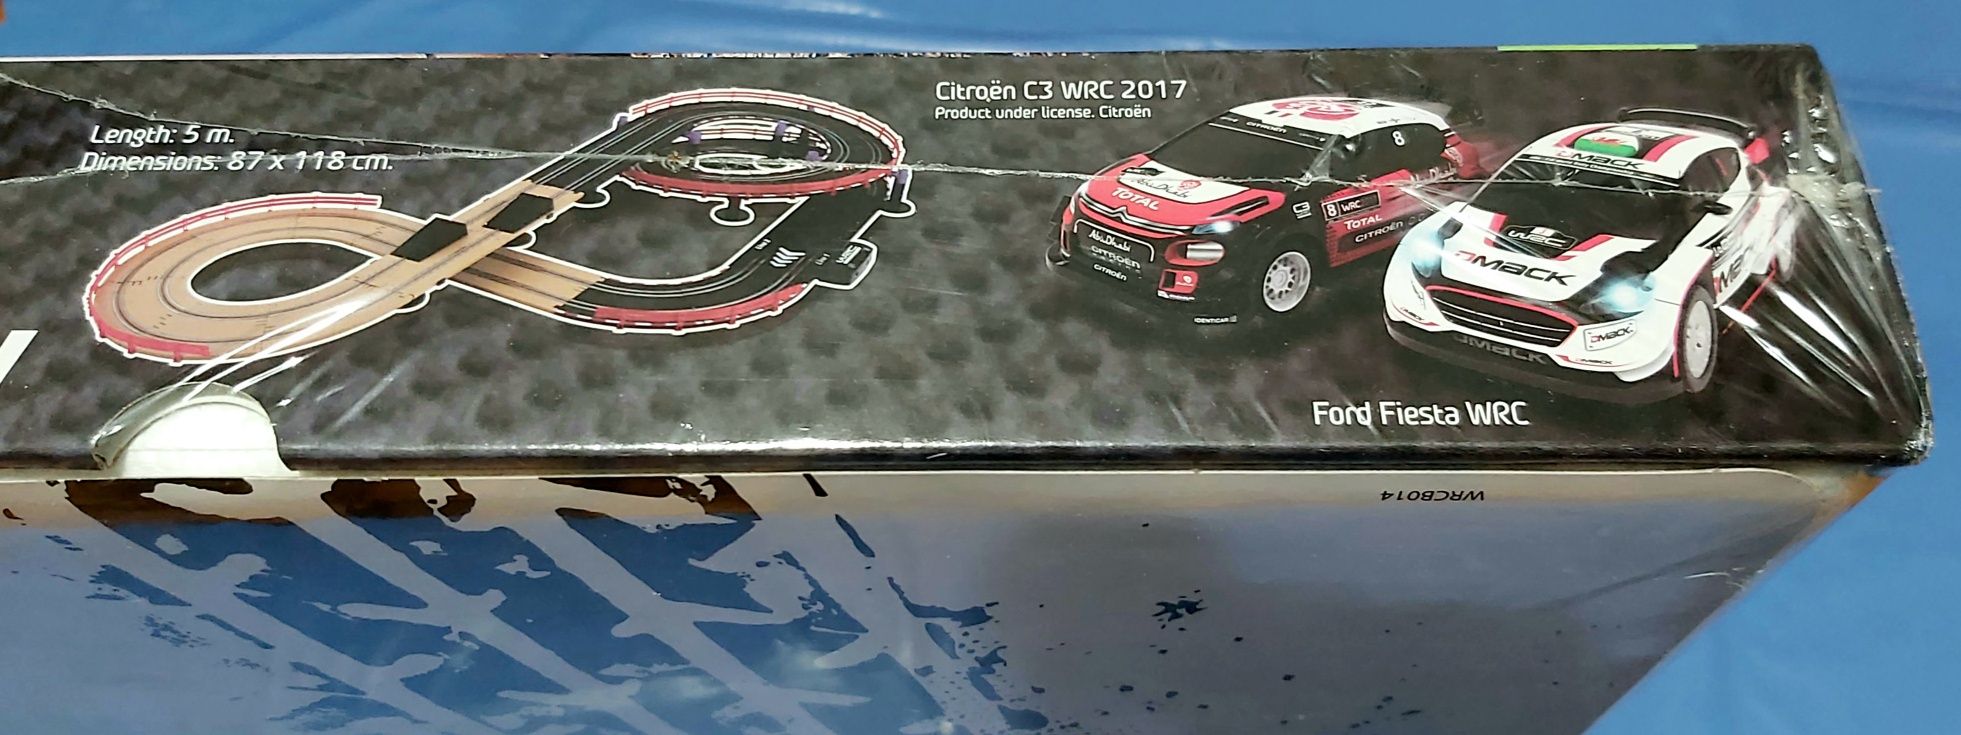 Pista circuito carros WRC Land Rally Nova. Citroen C3 e Ford Fiesta